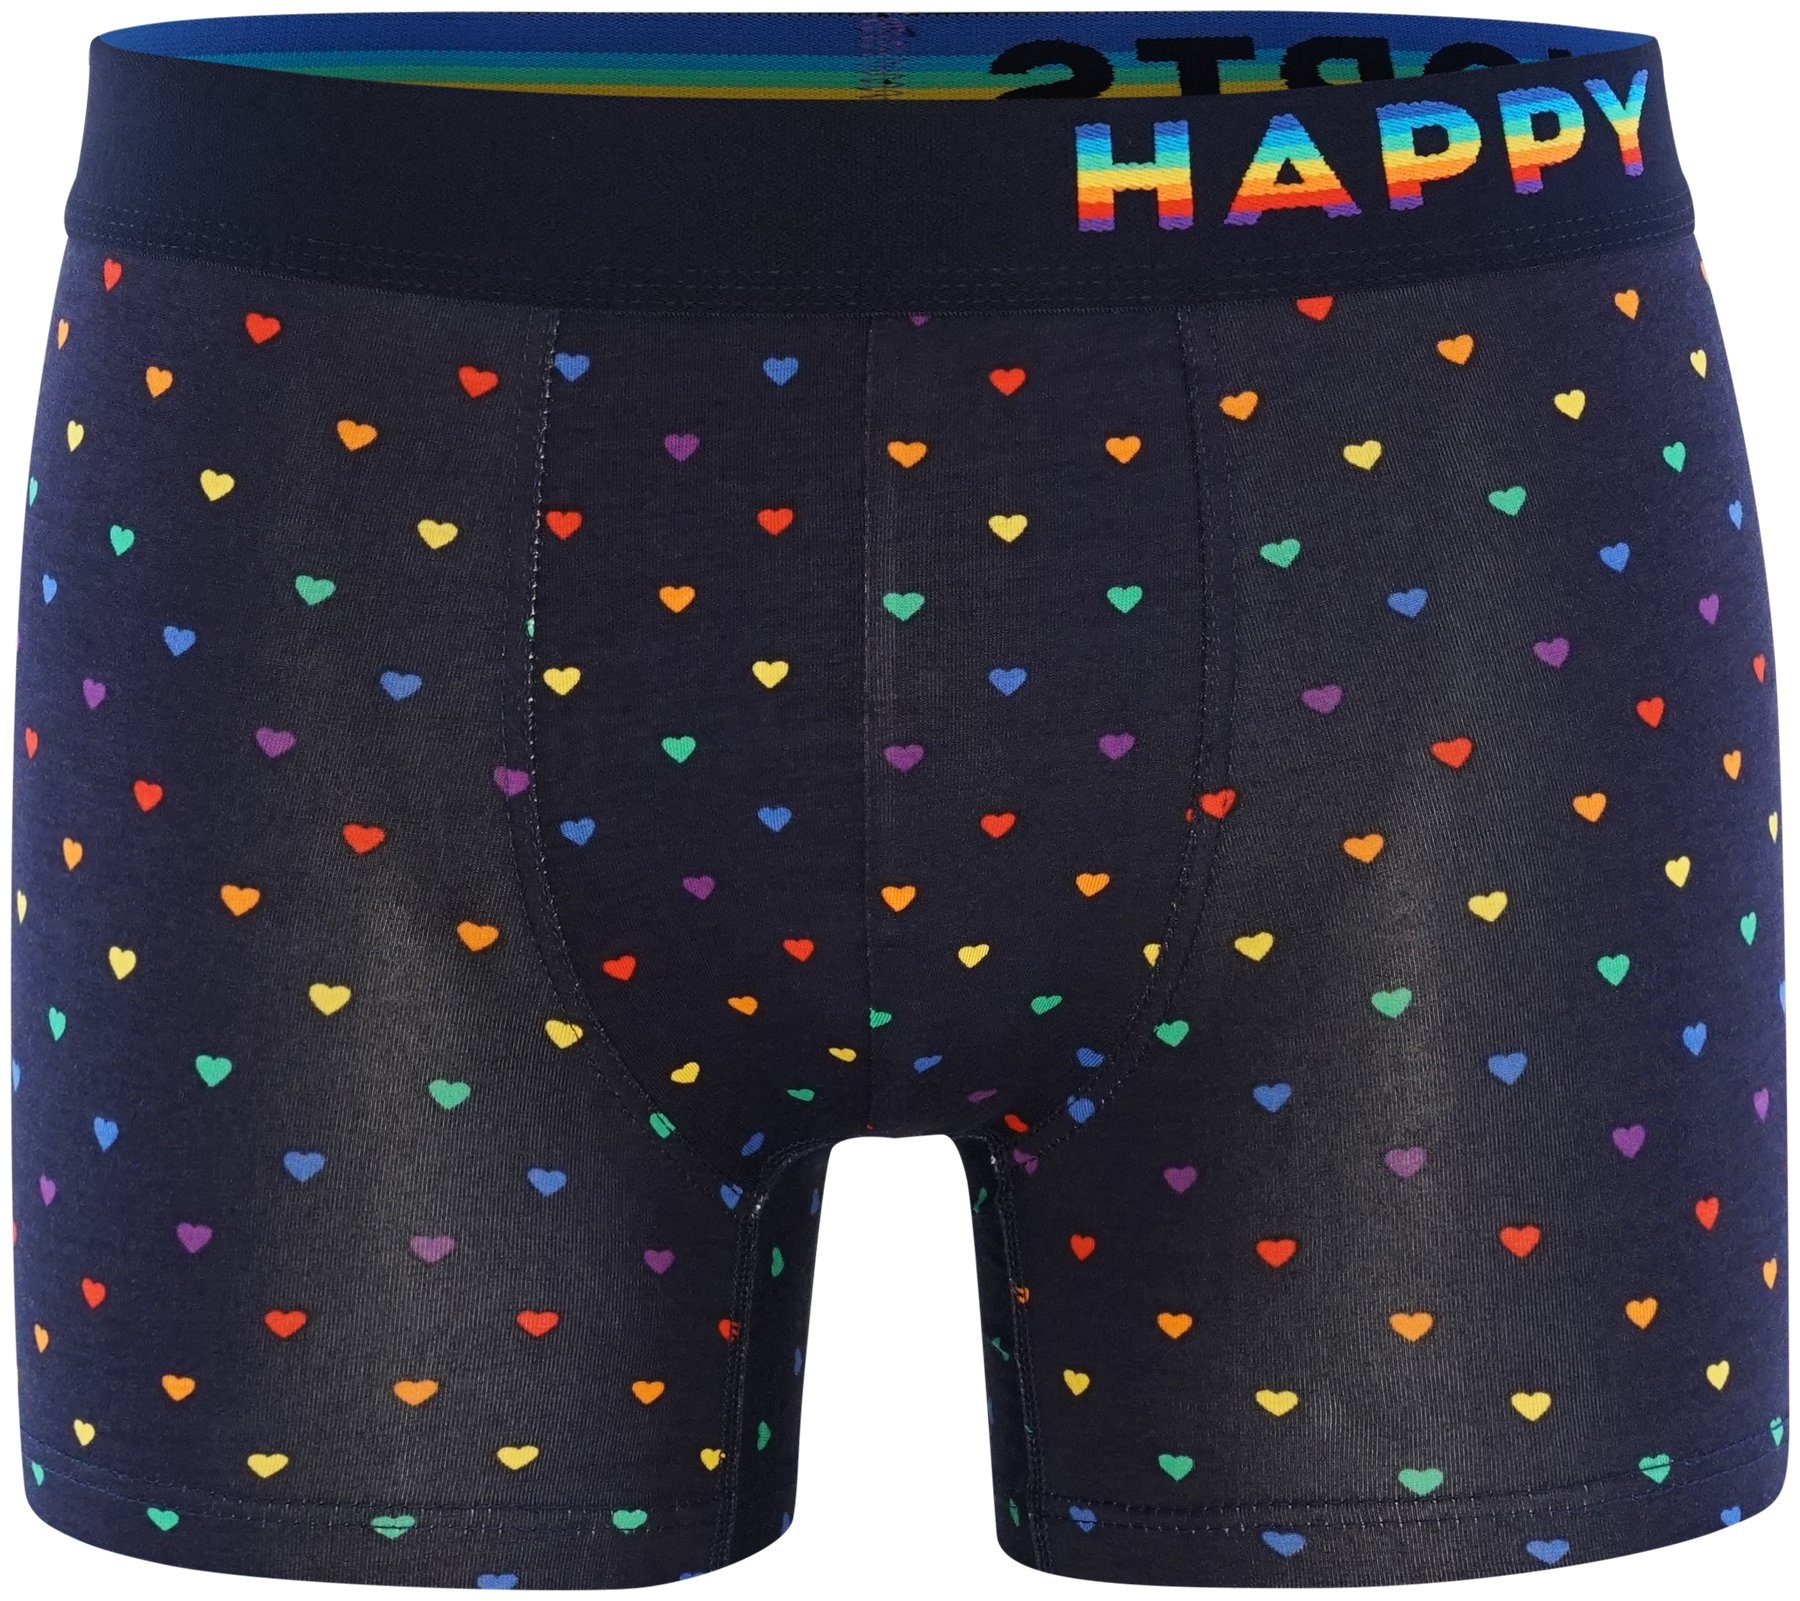 2-Pack Rainbow HAPPY Pants SHORTS Hearts Trunks Retro